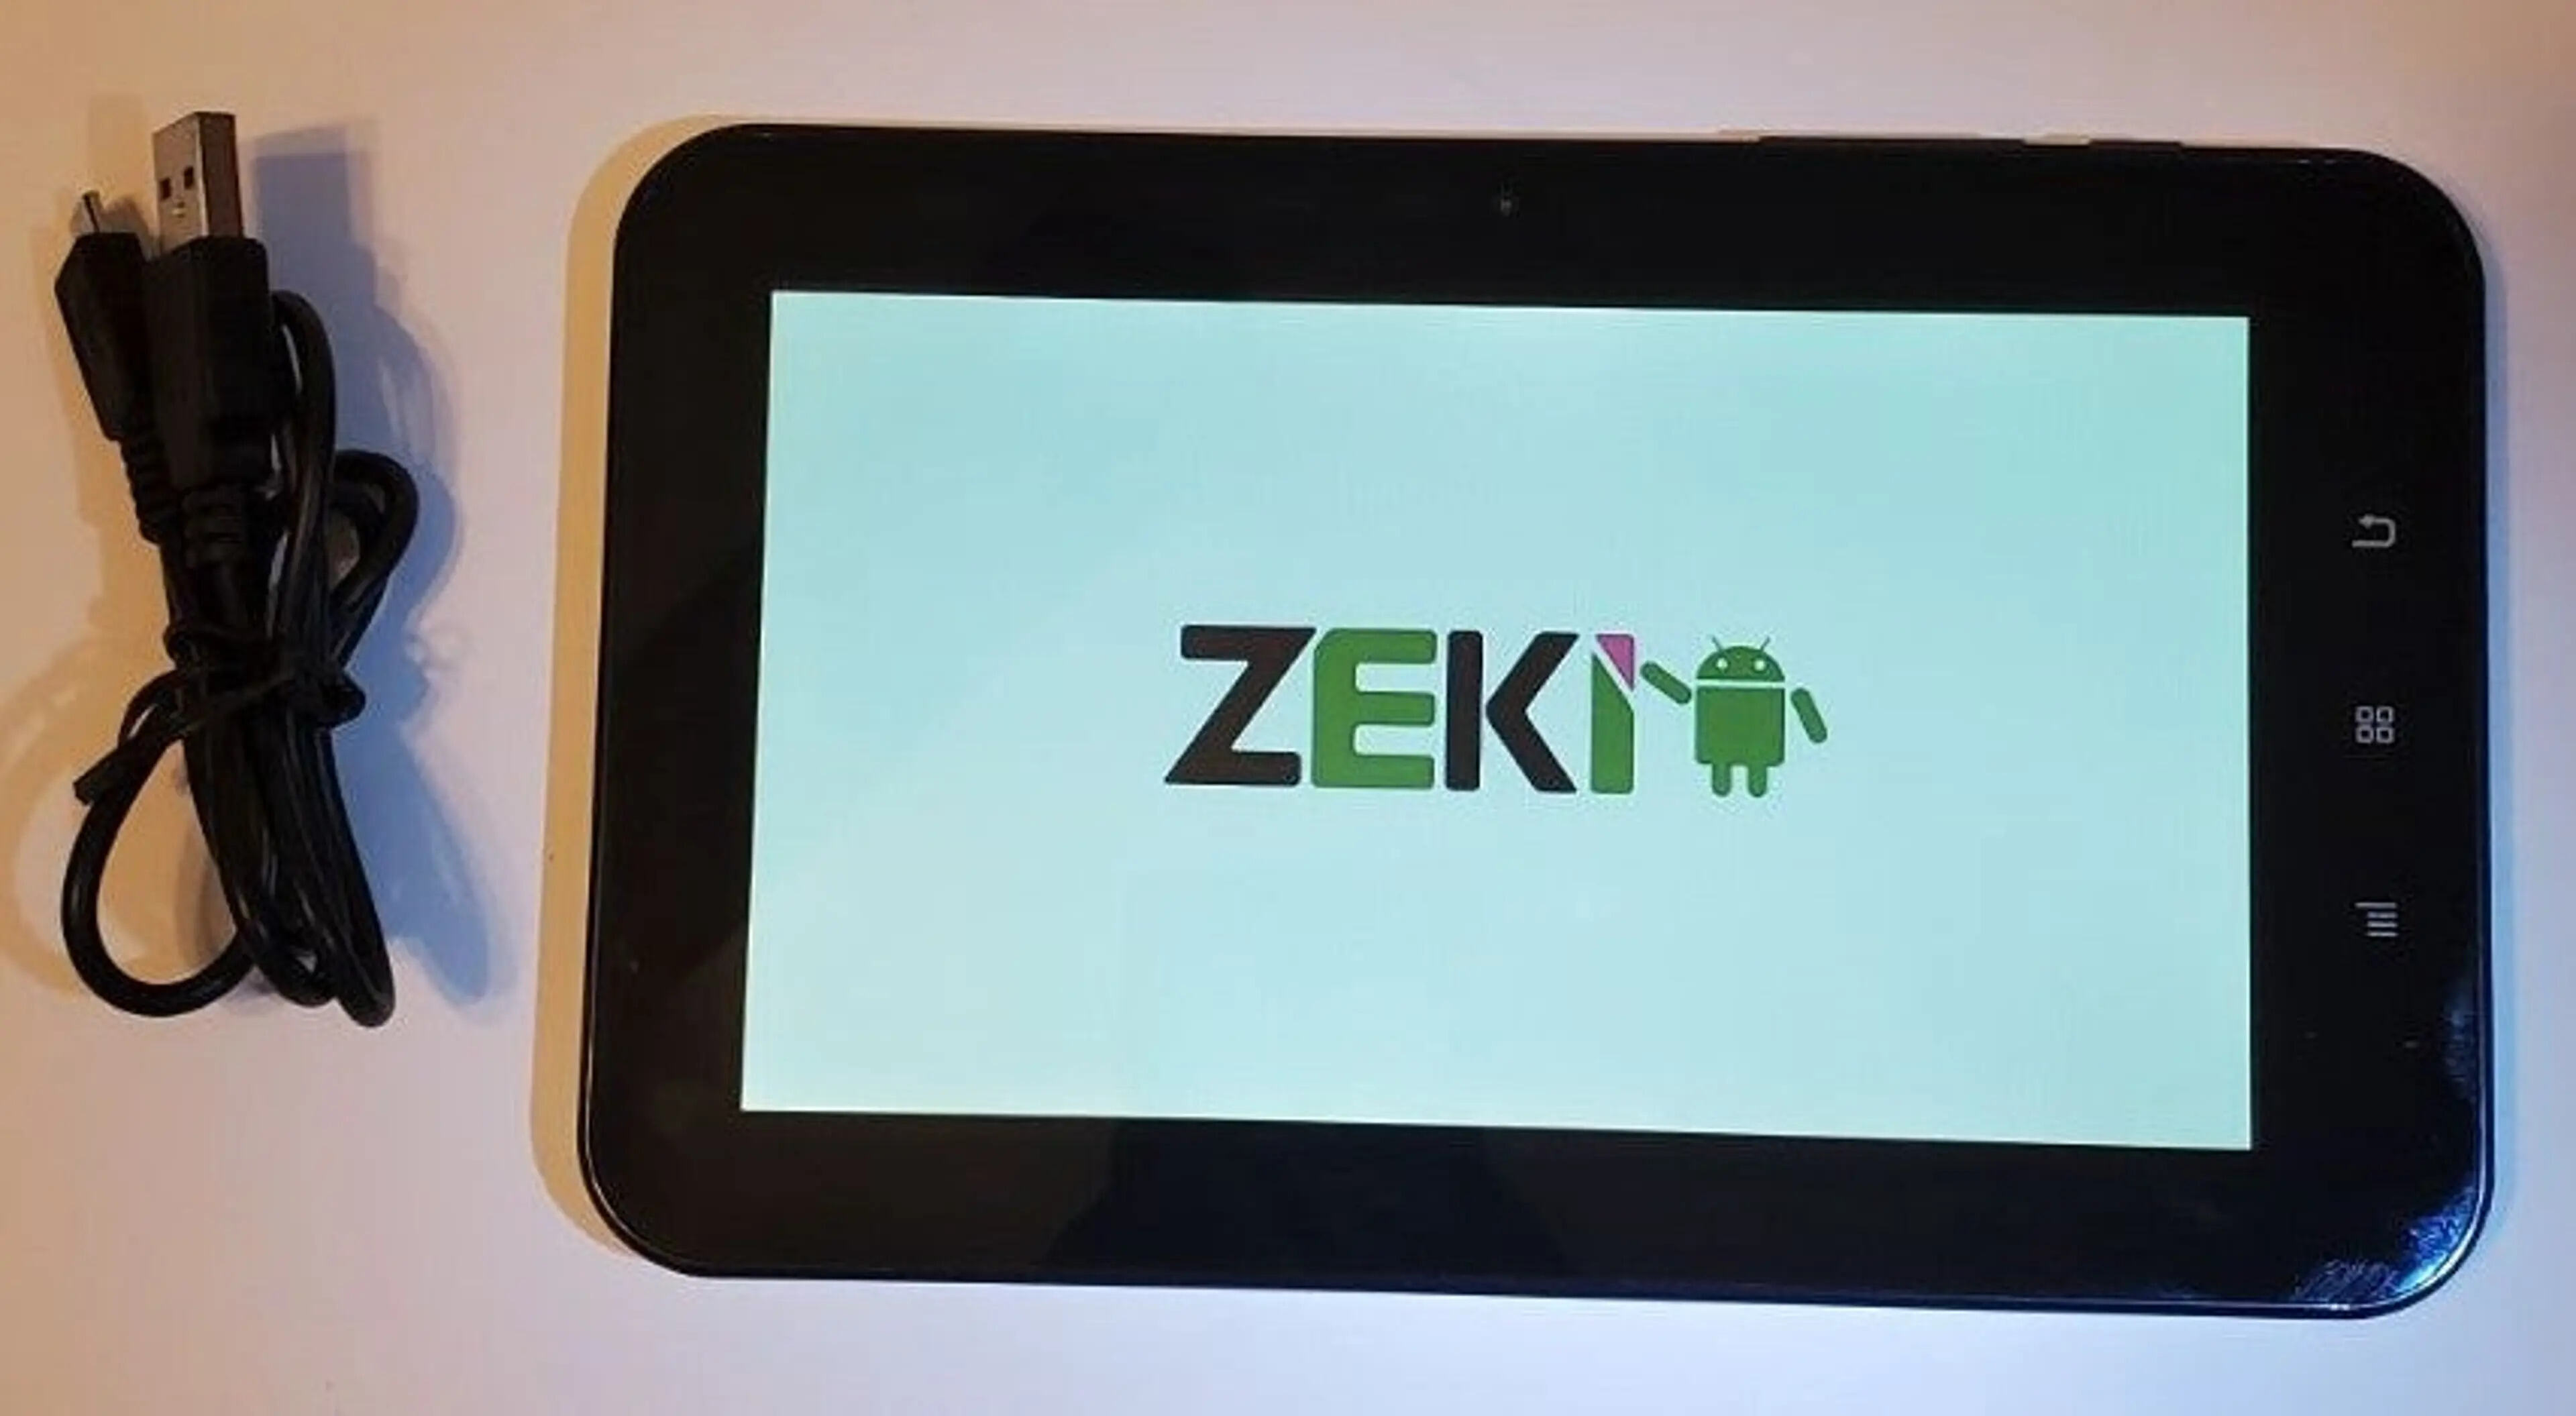 How To Hard Reset Zeki Tablet